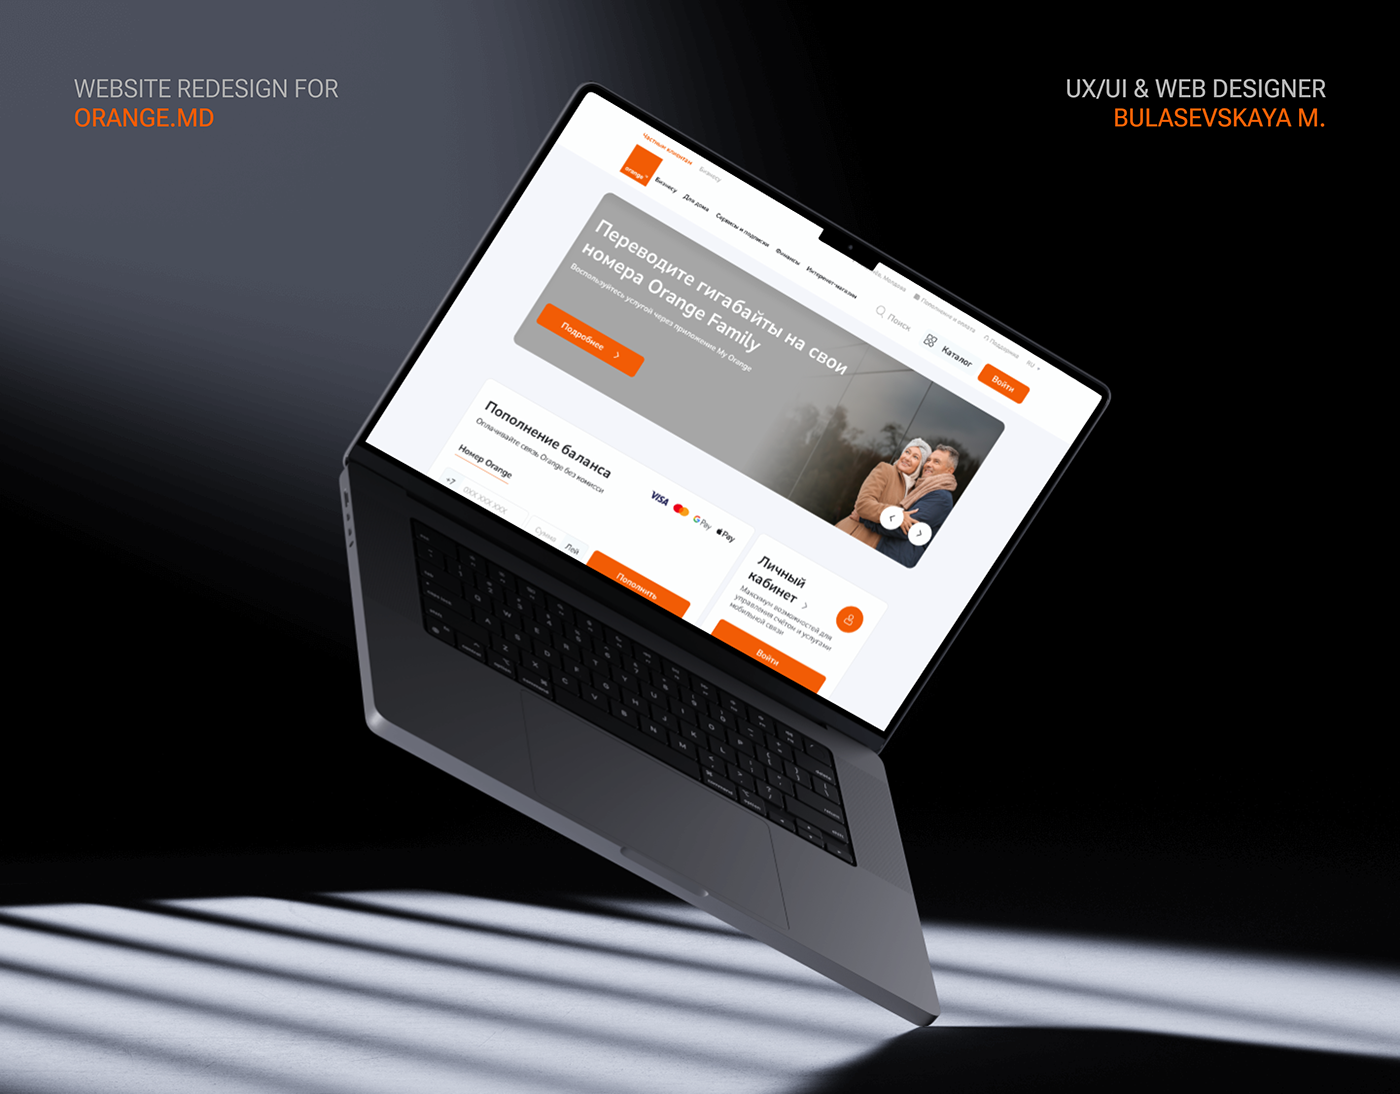 Web Design  Website redesign redesign website Figma UX design UI/UX Operator Telecom sim company